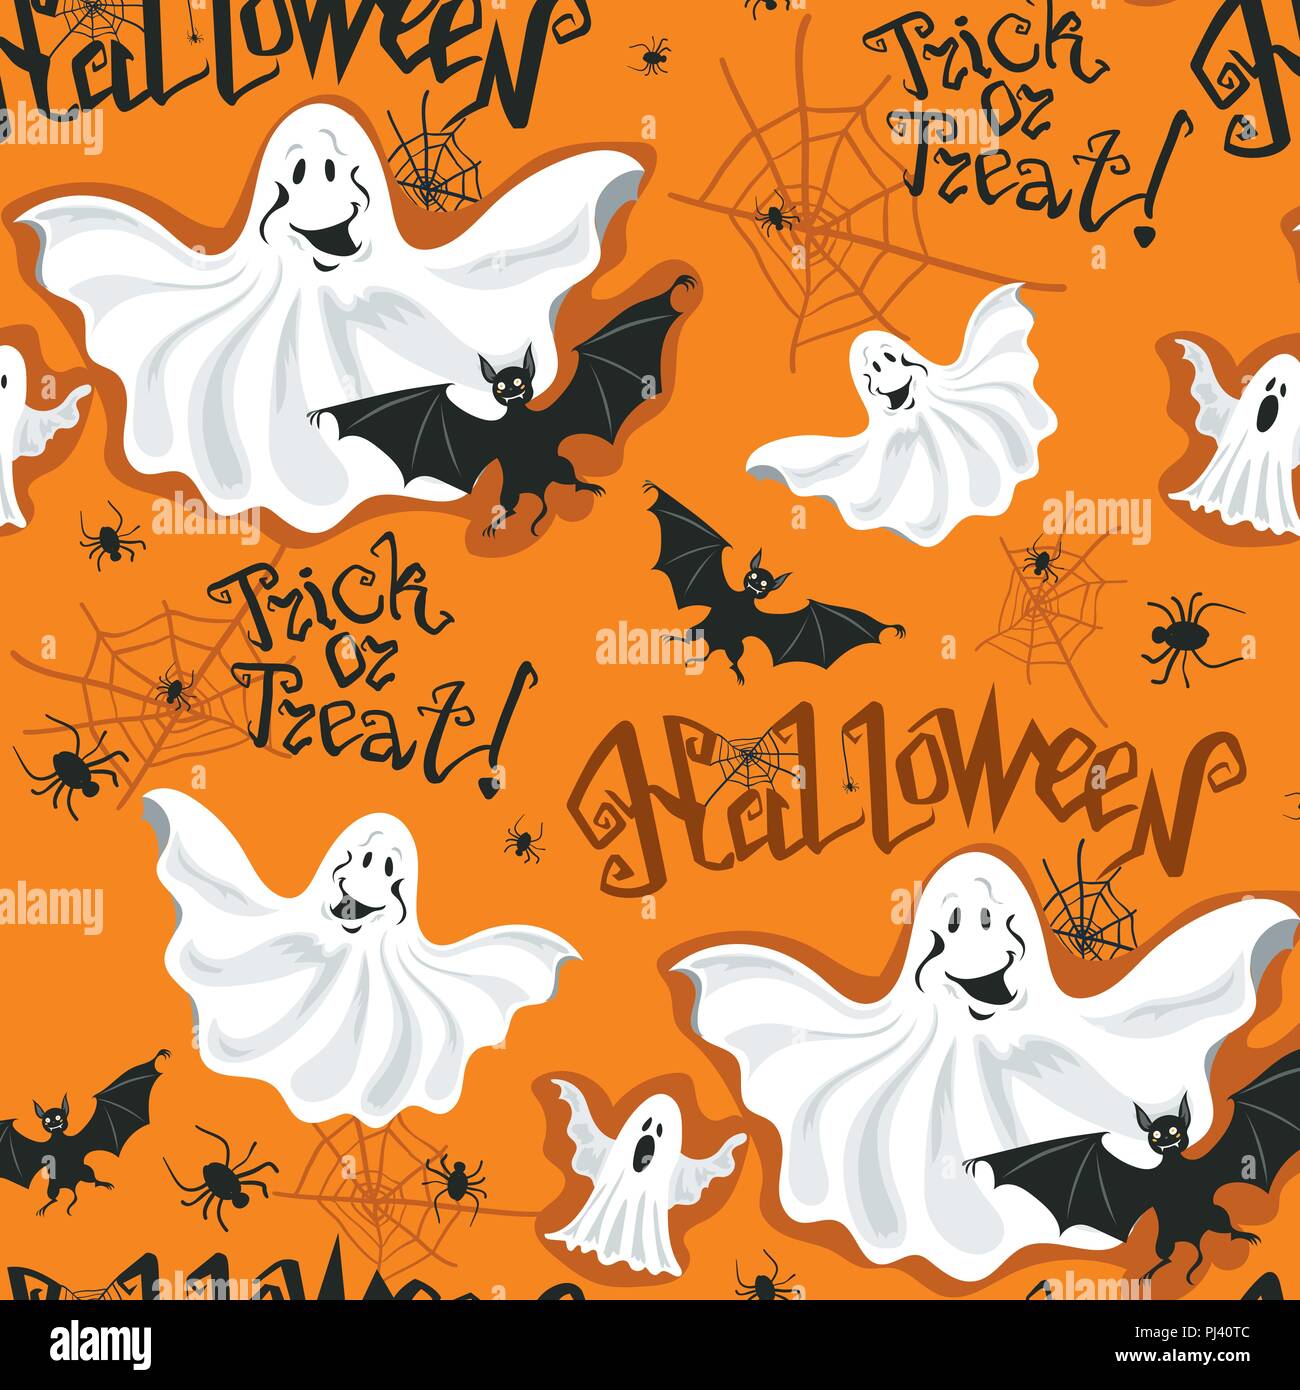 Halloween Symbole nahtlose Muster. Bat und Spider s Web auf weißem Hintergrund. Schwarze und weiße Vektor-illustration Halloween drucken Stock Vektor